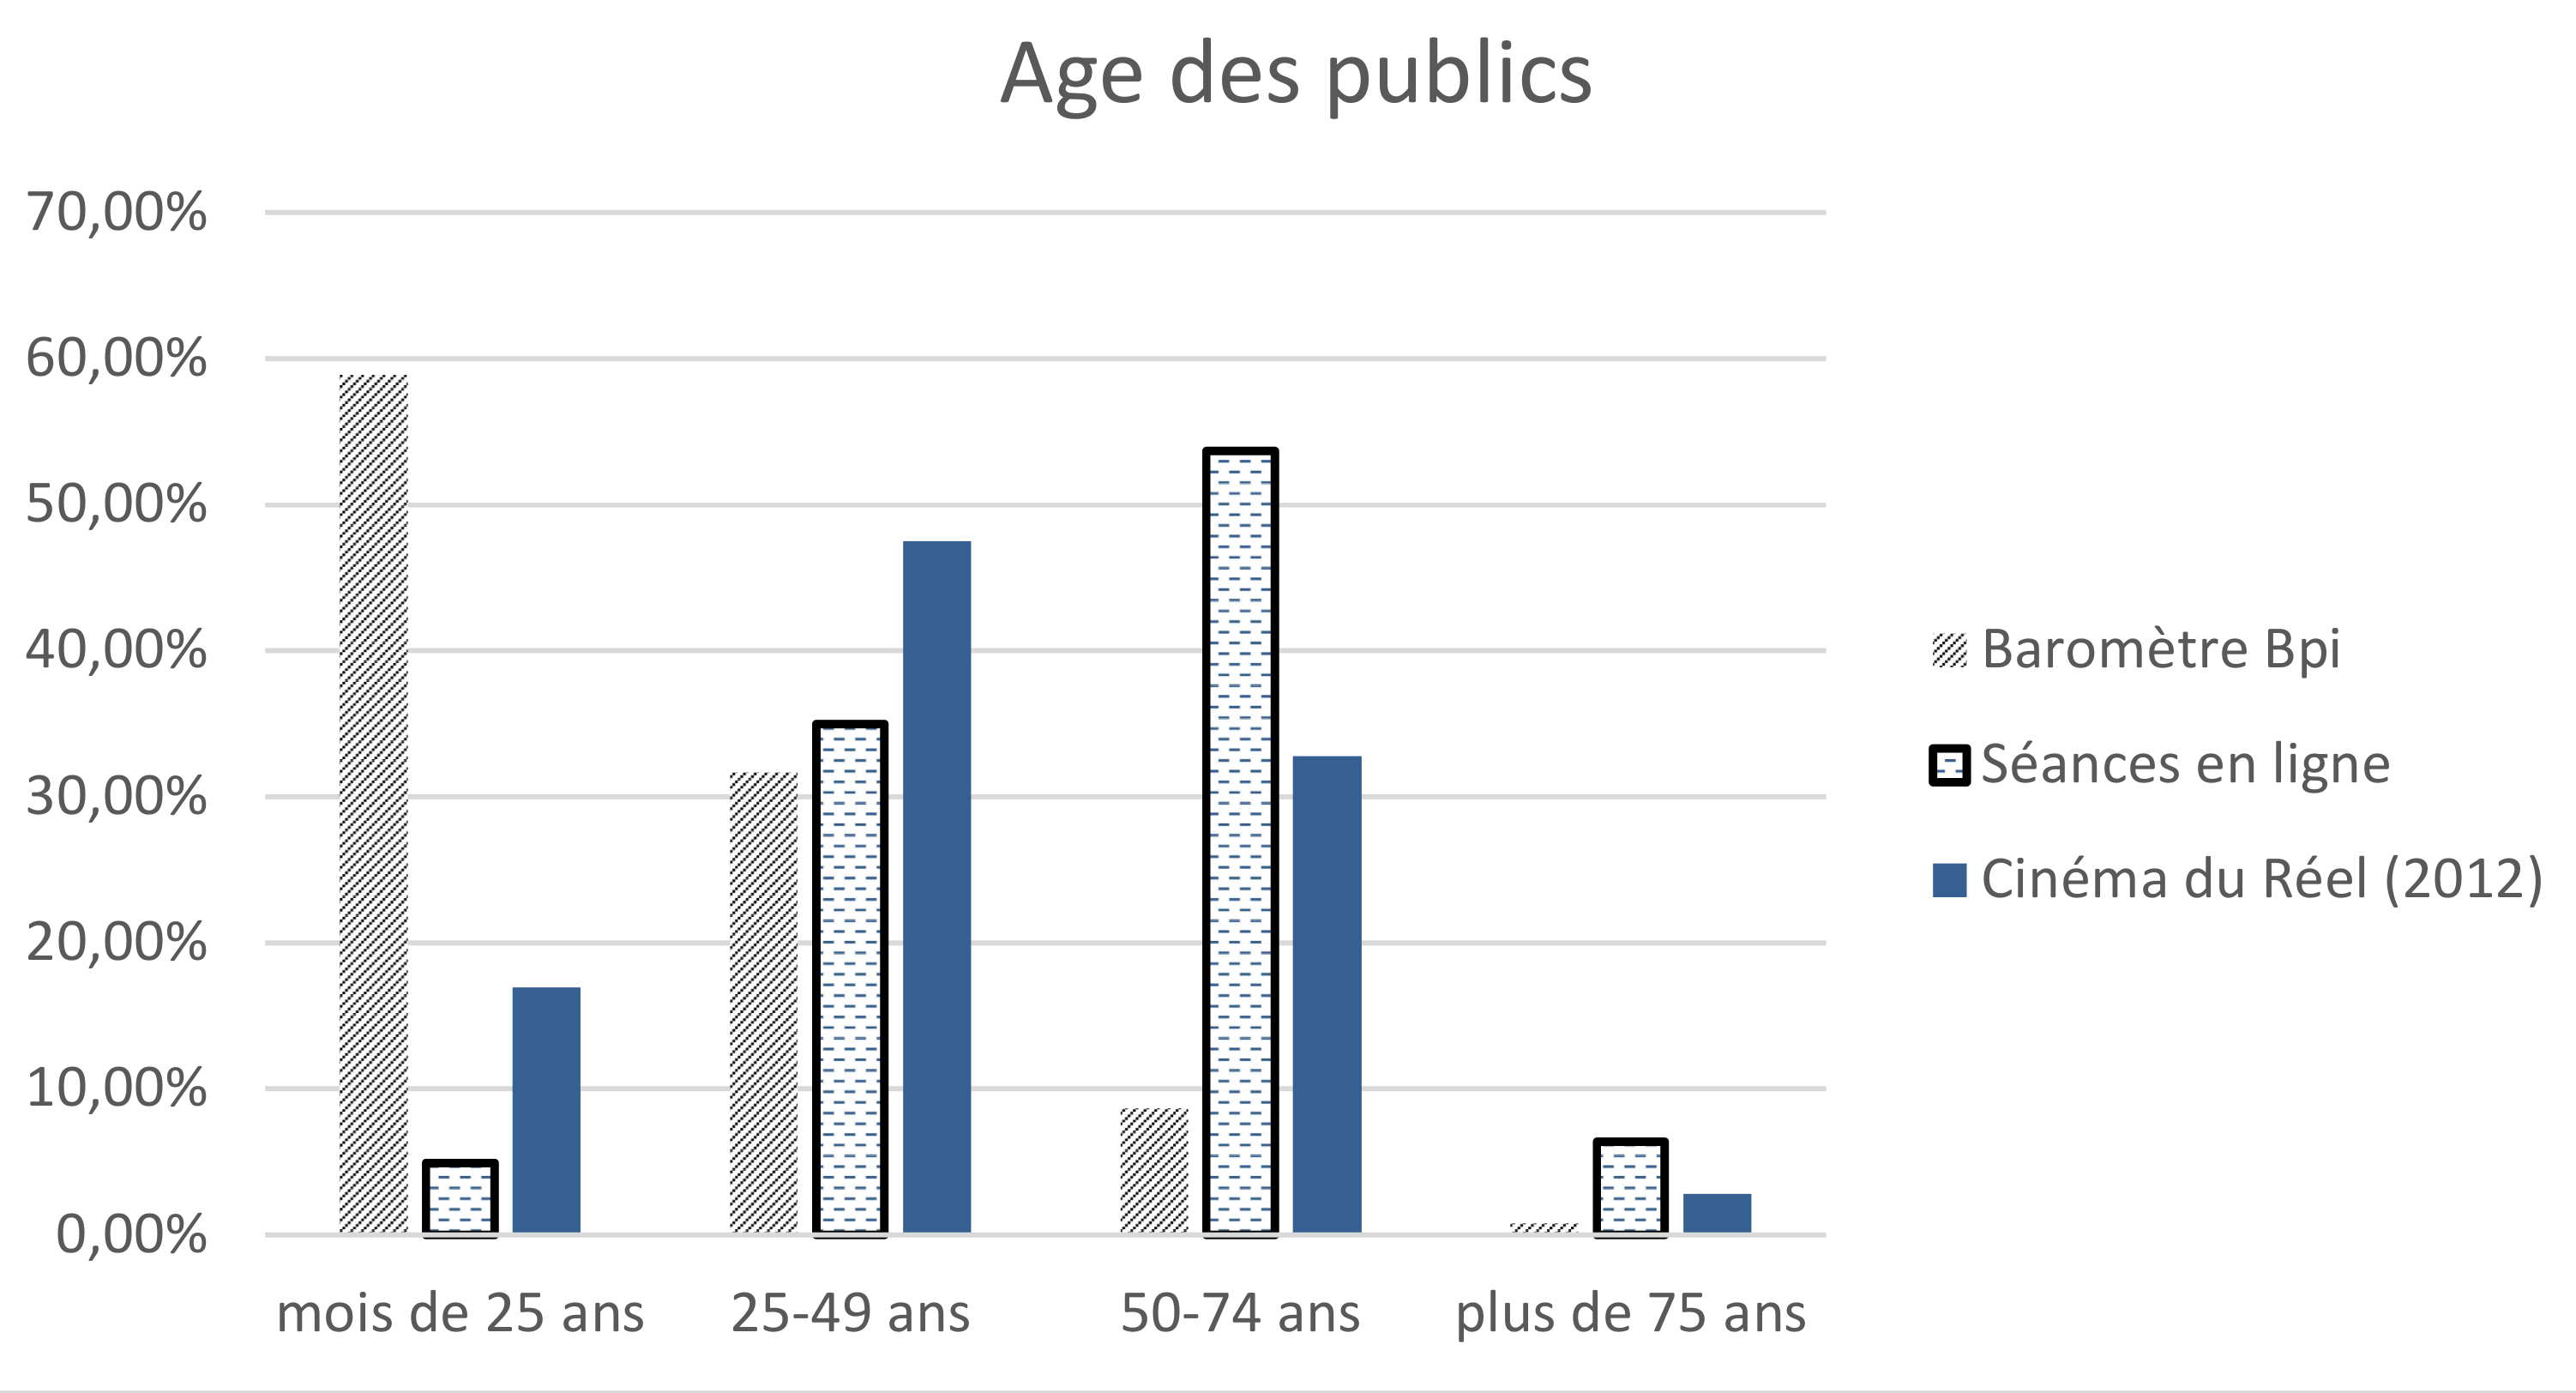 Age des publics (bibliothèque, Cinéma du Réel 2012, Séances virtuelles)